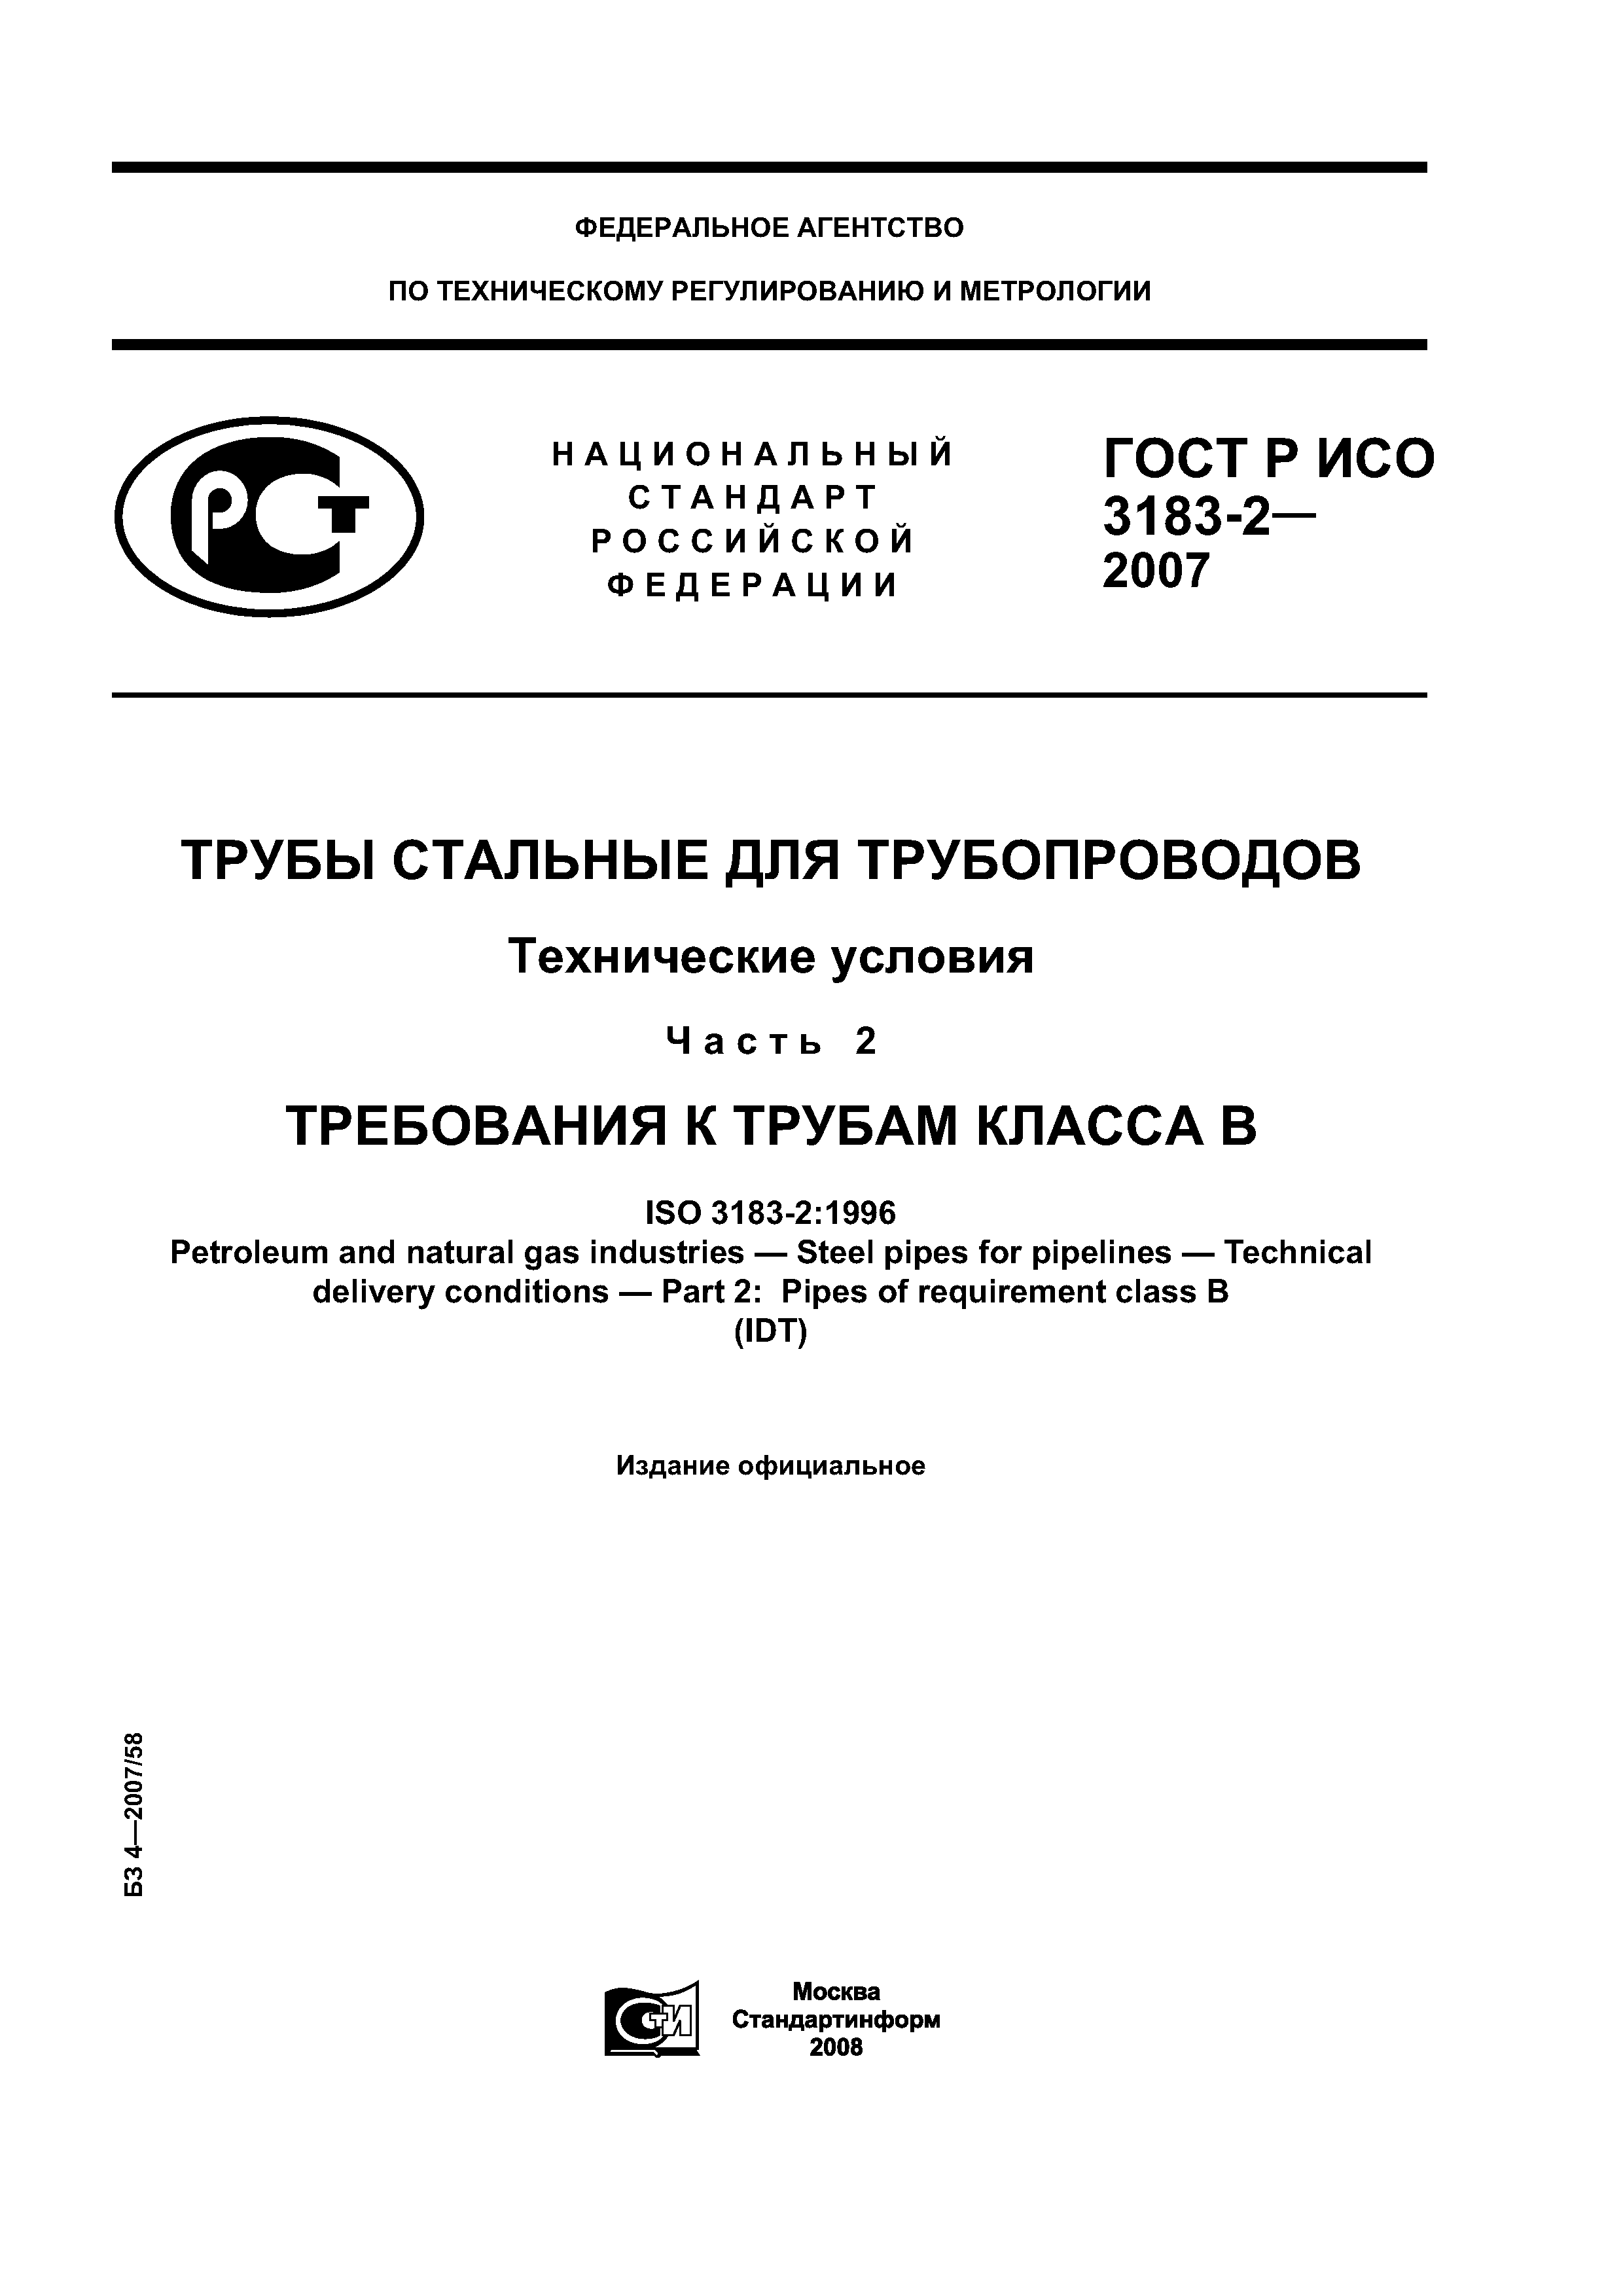 ГОСТ Р ИСО 3183-2-2007